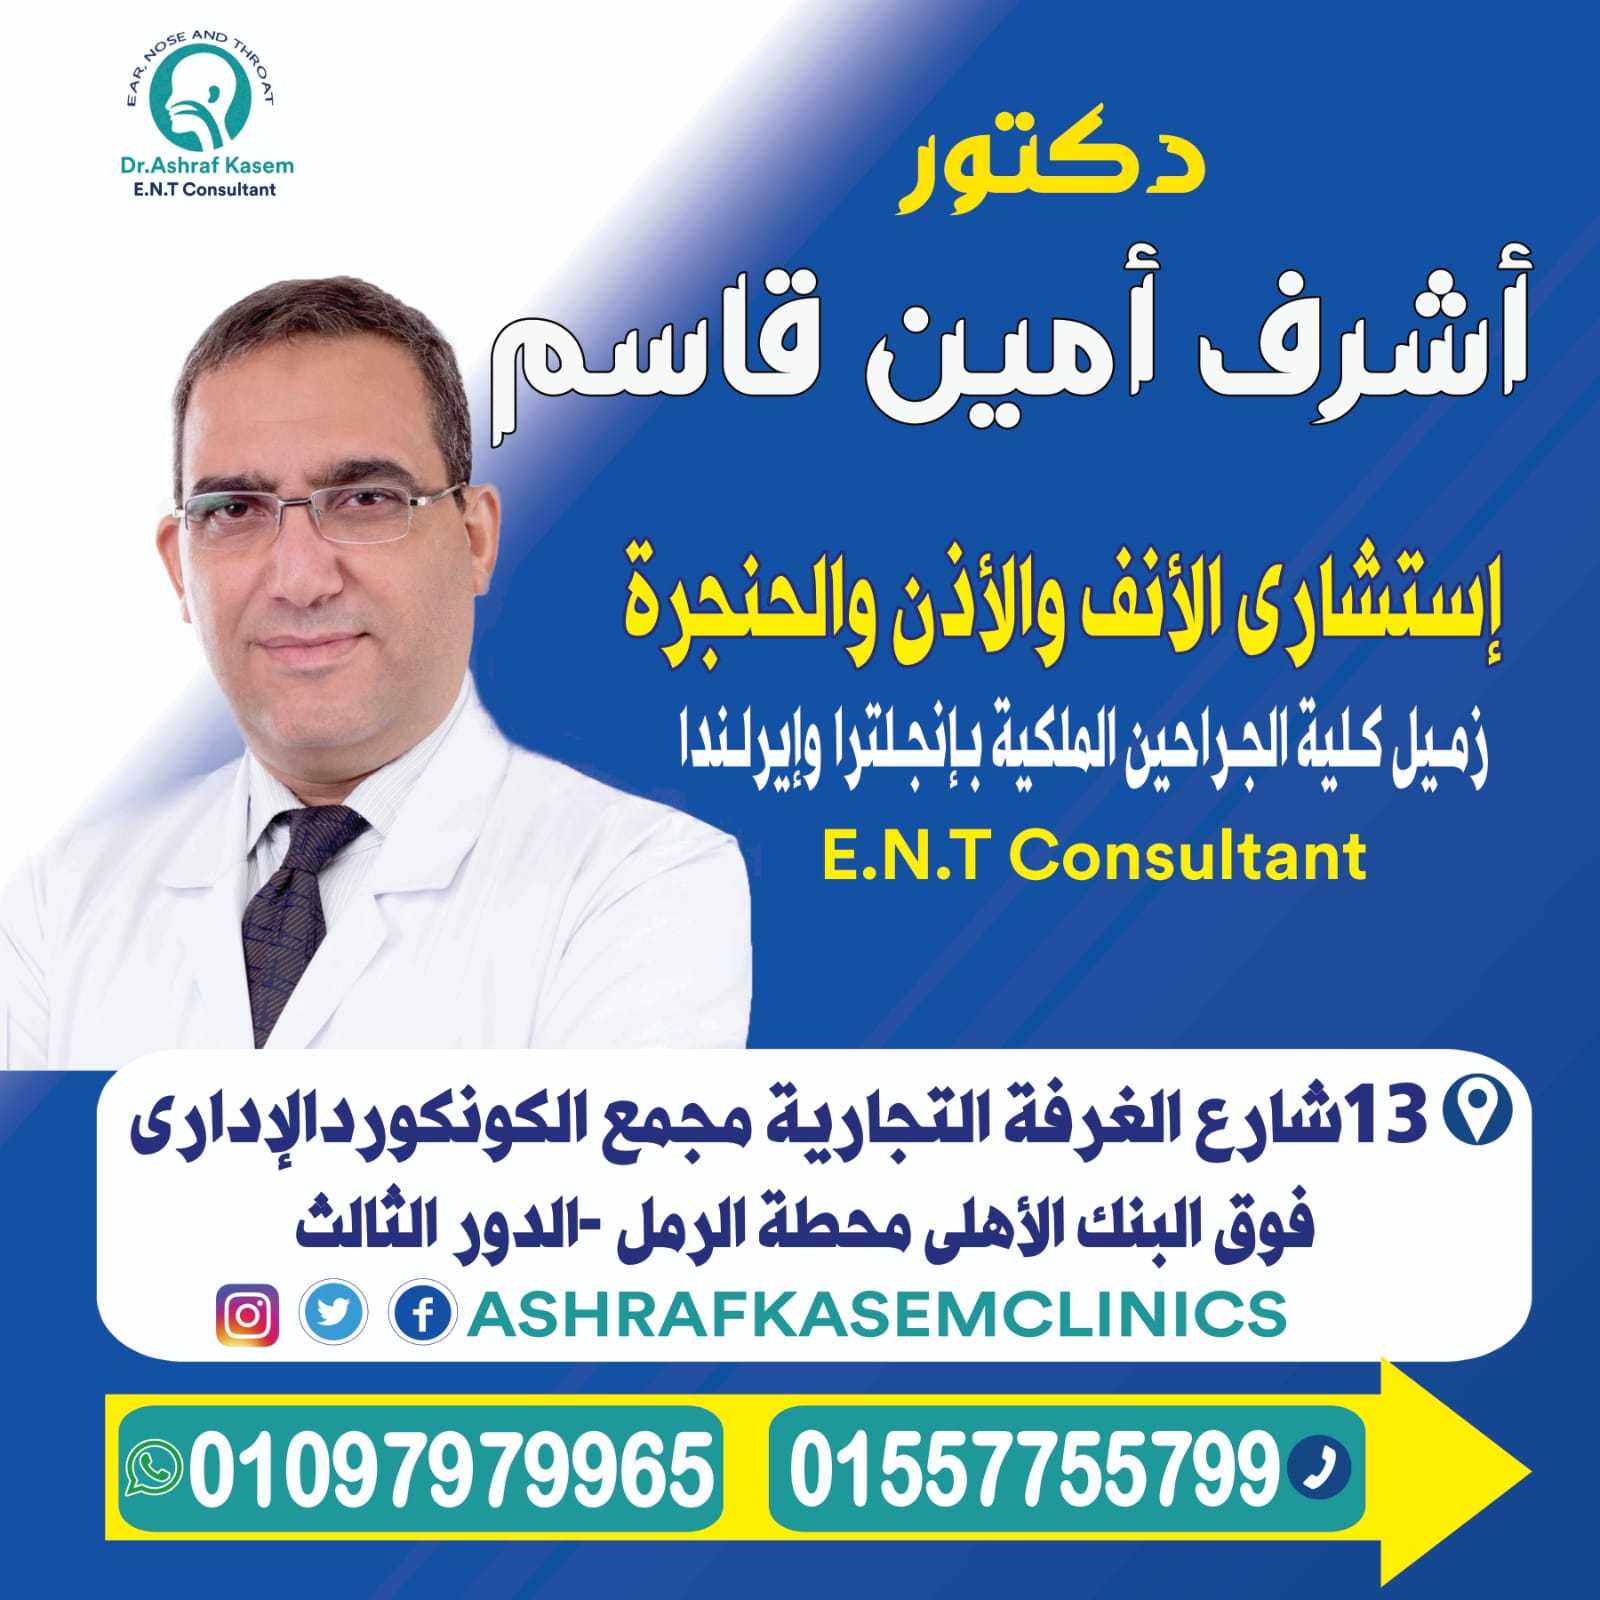 Dr. Ashraf Kasem